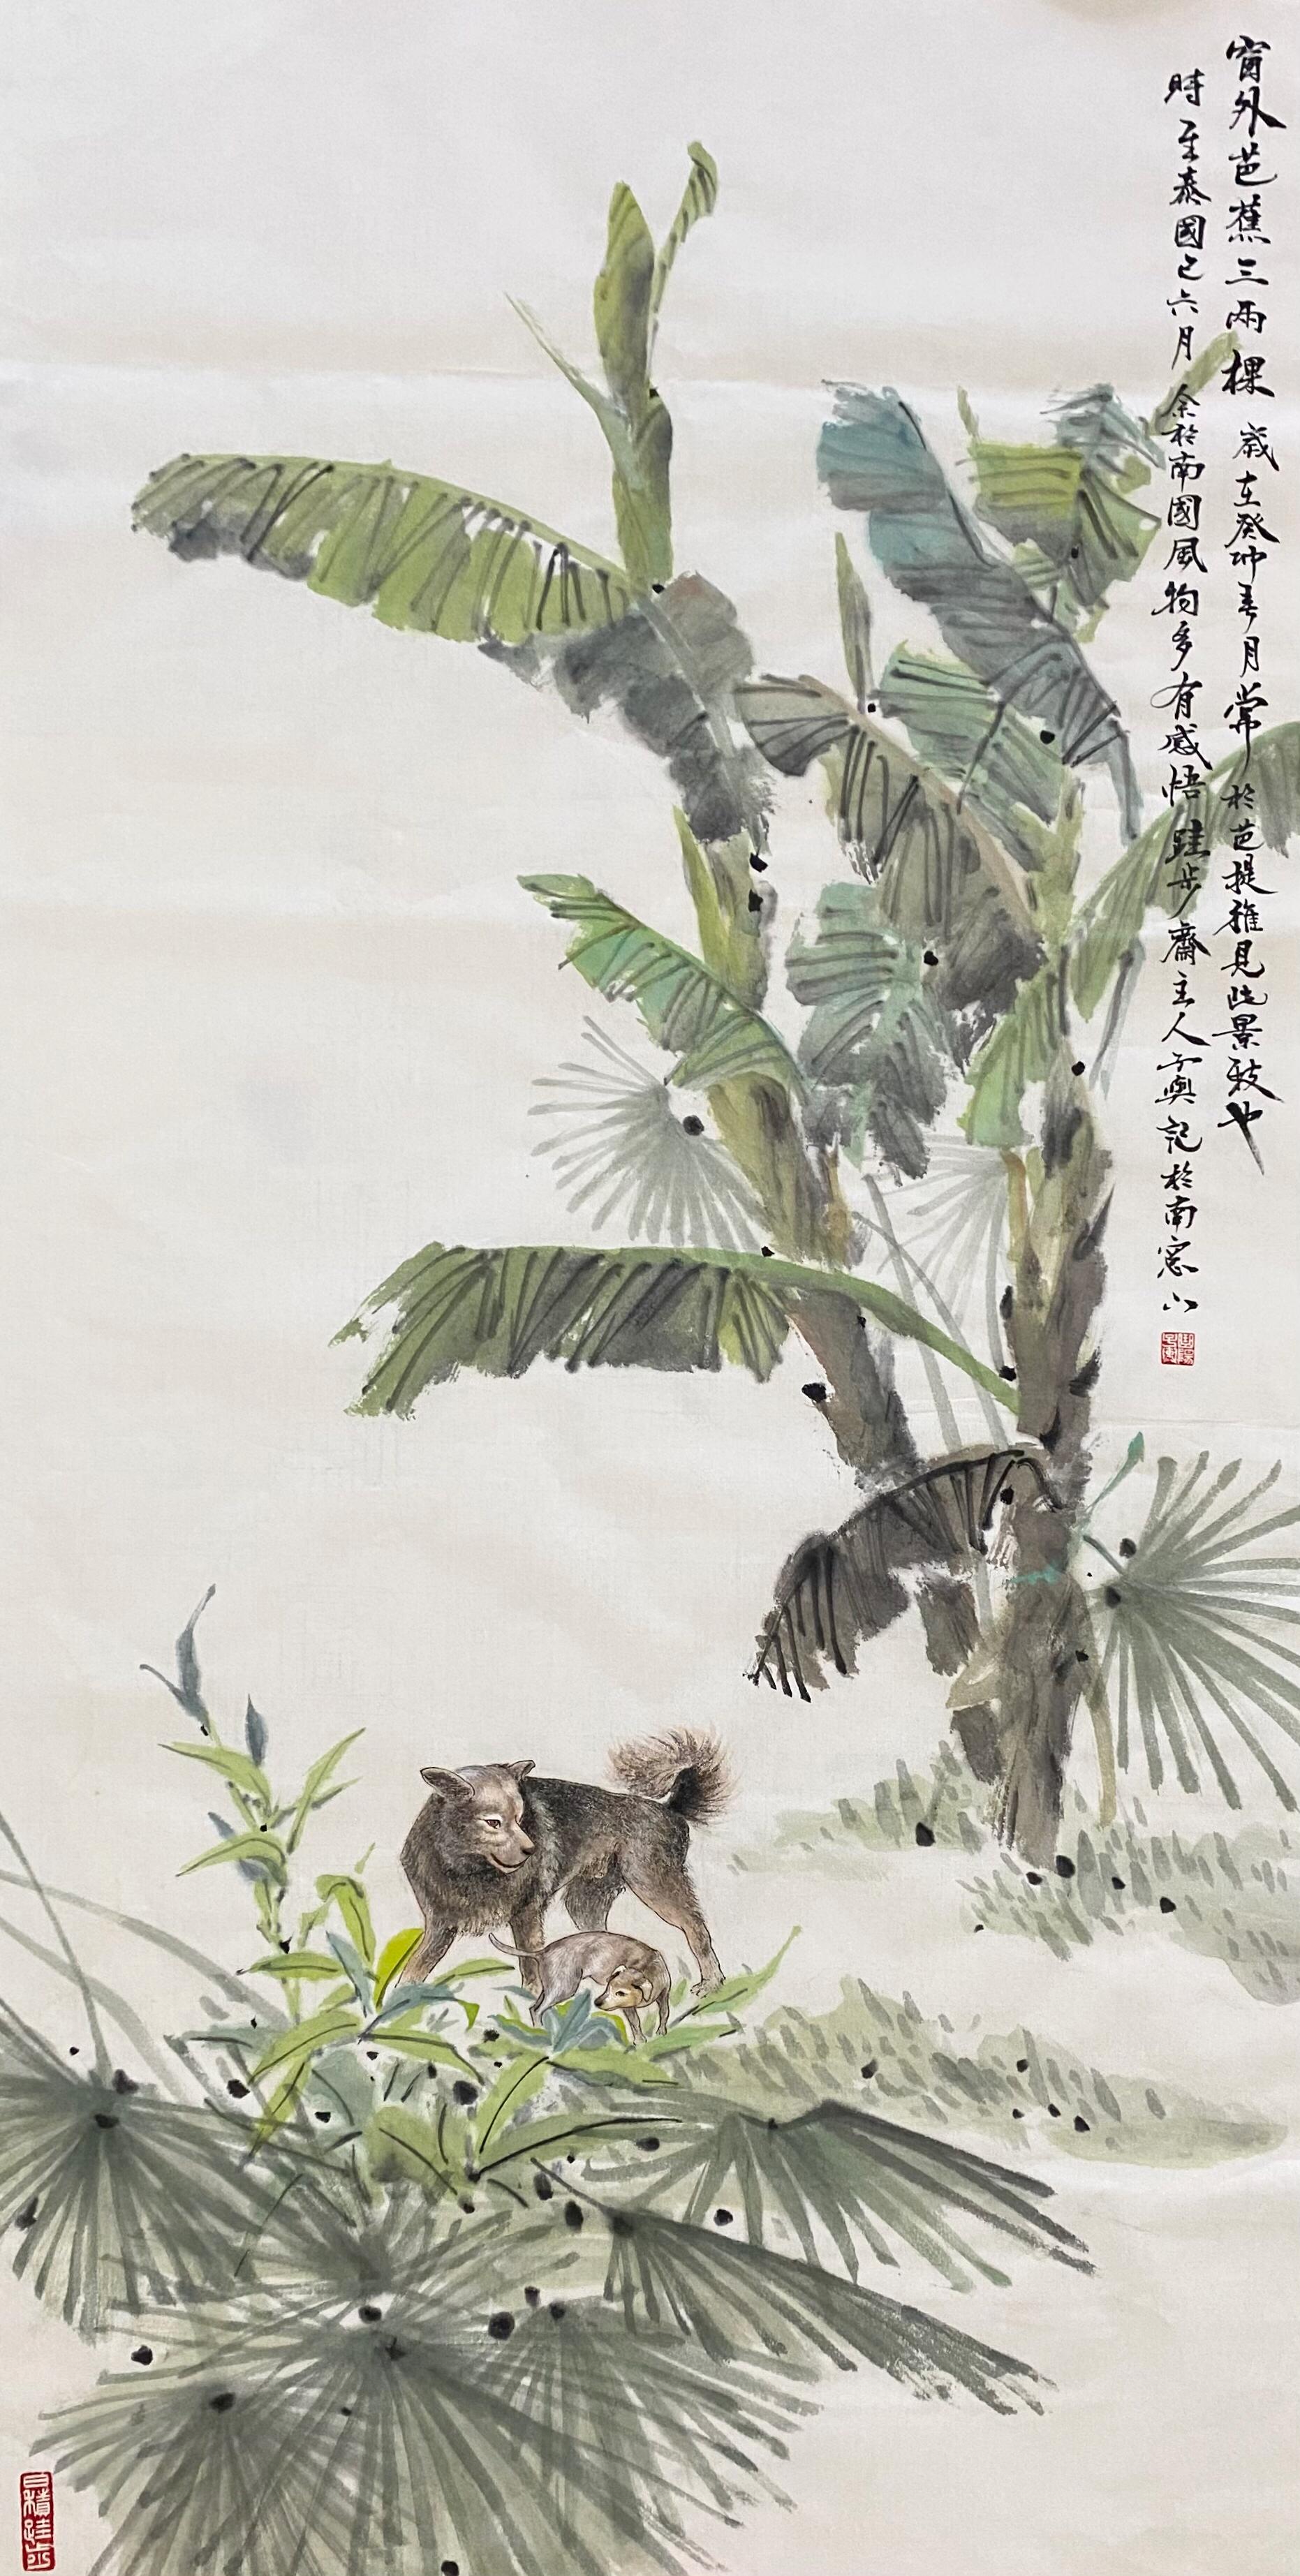 Zeitgenössische chinesische Kunst von Liu Ziyu -  Unter dem Bananenbaum